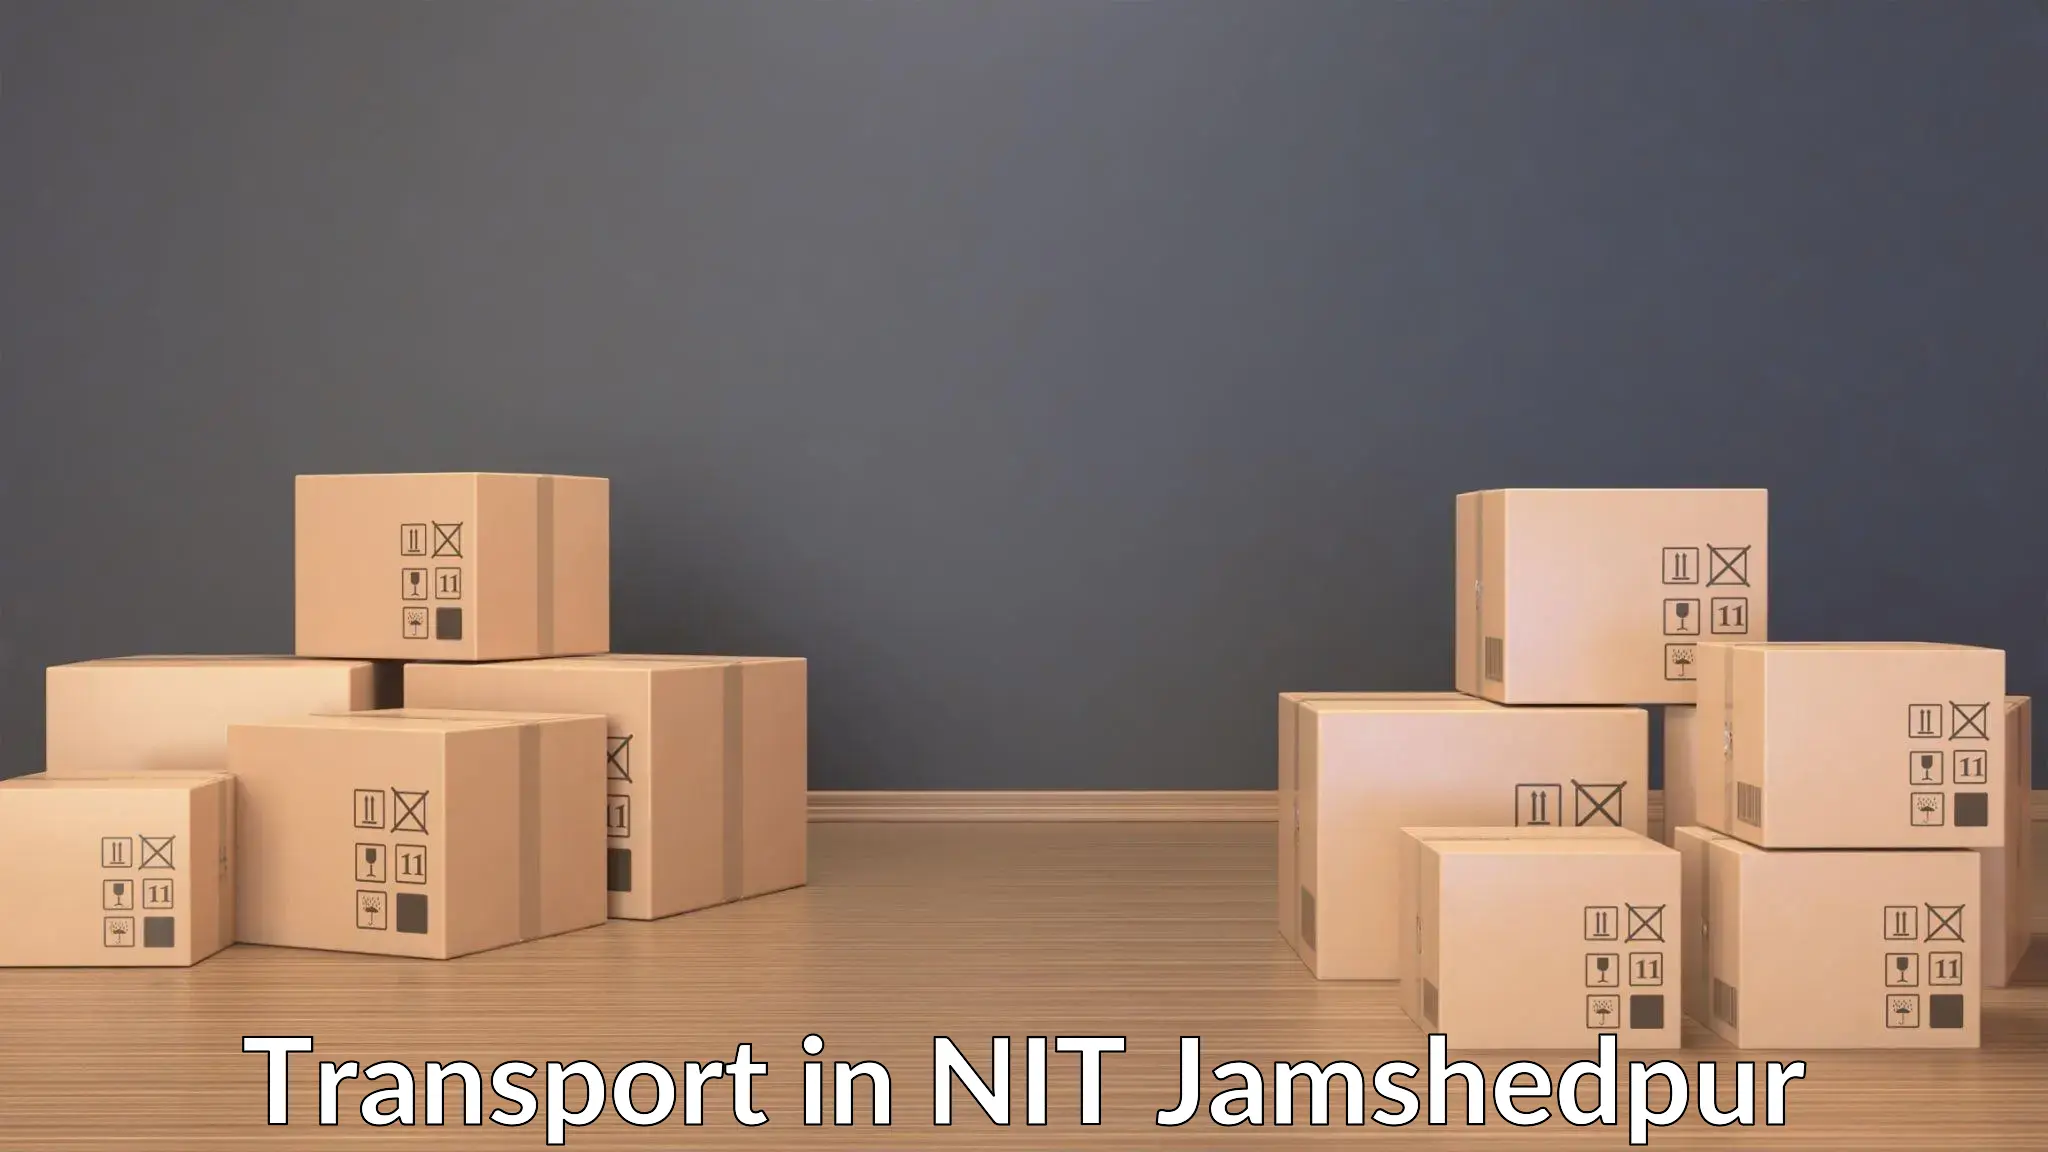 Transportation solution services in NIT Jamshedpur